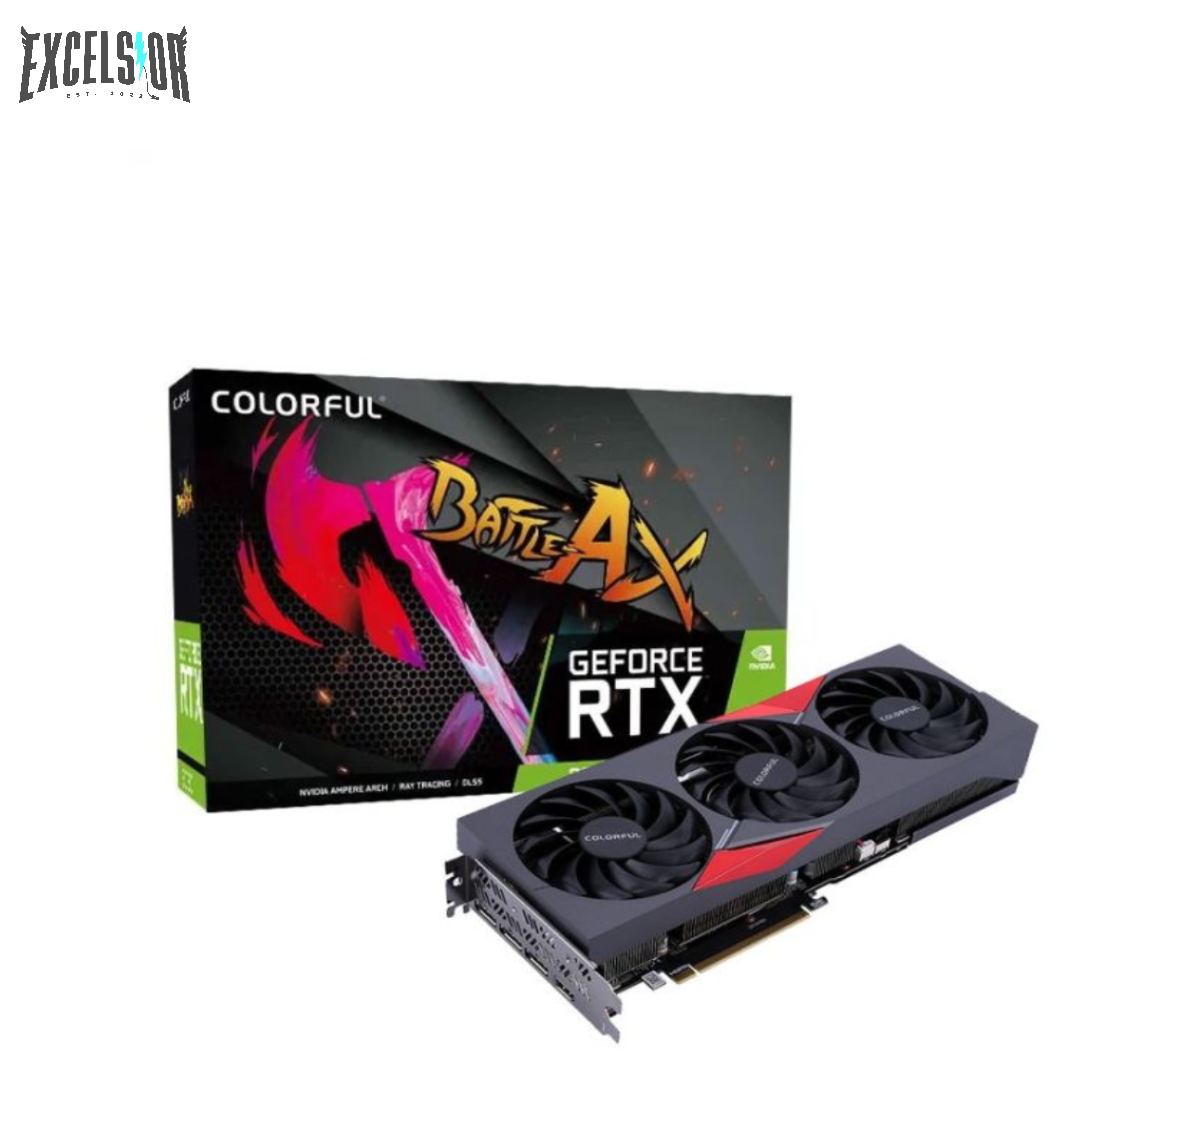 Colorful	GeForce RTX 3050 NB 8G EX-V